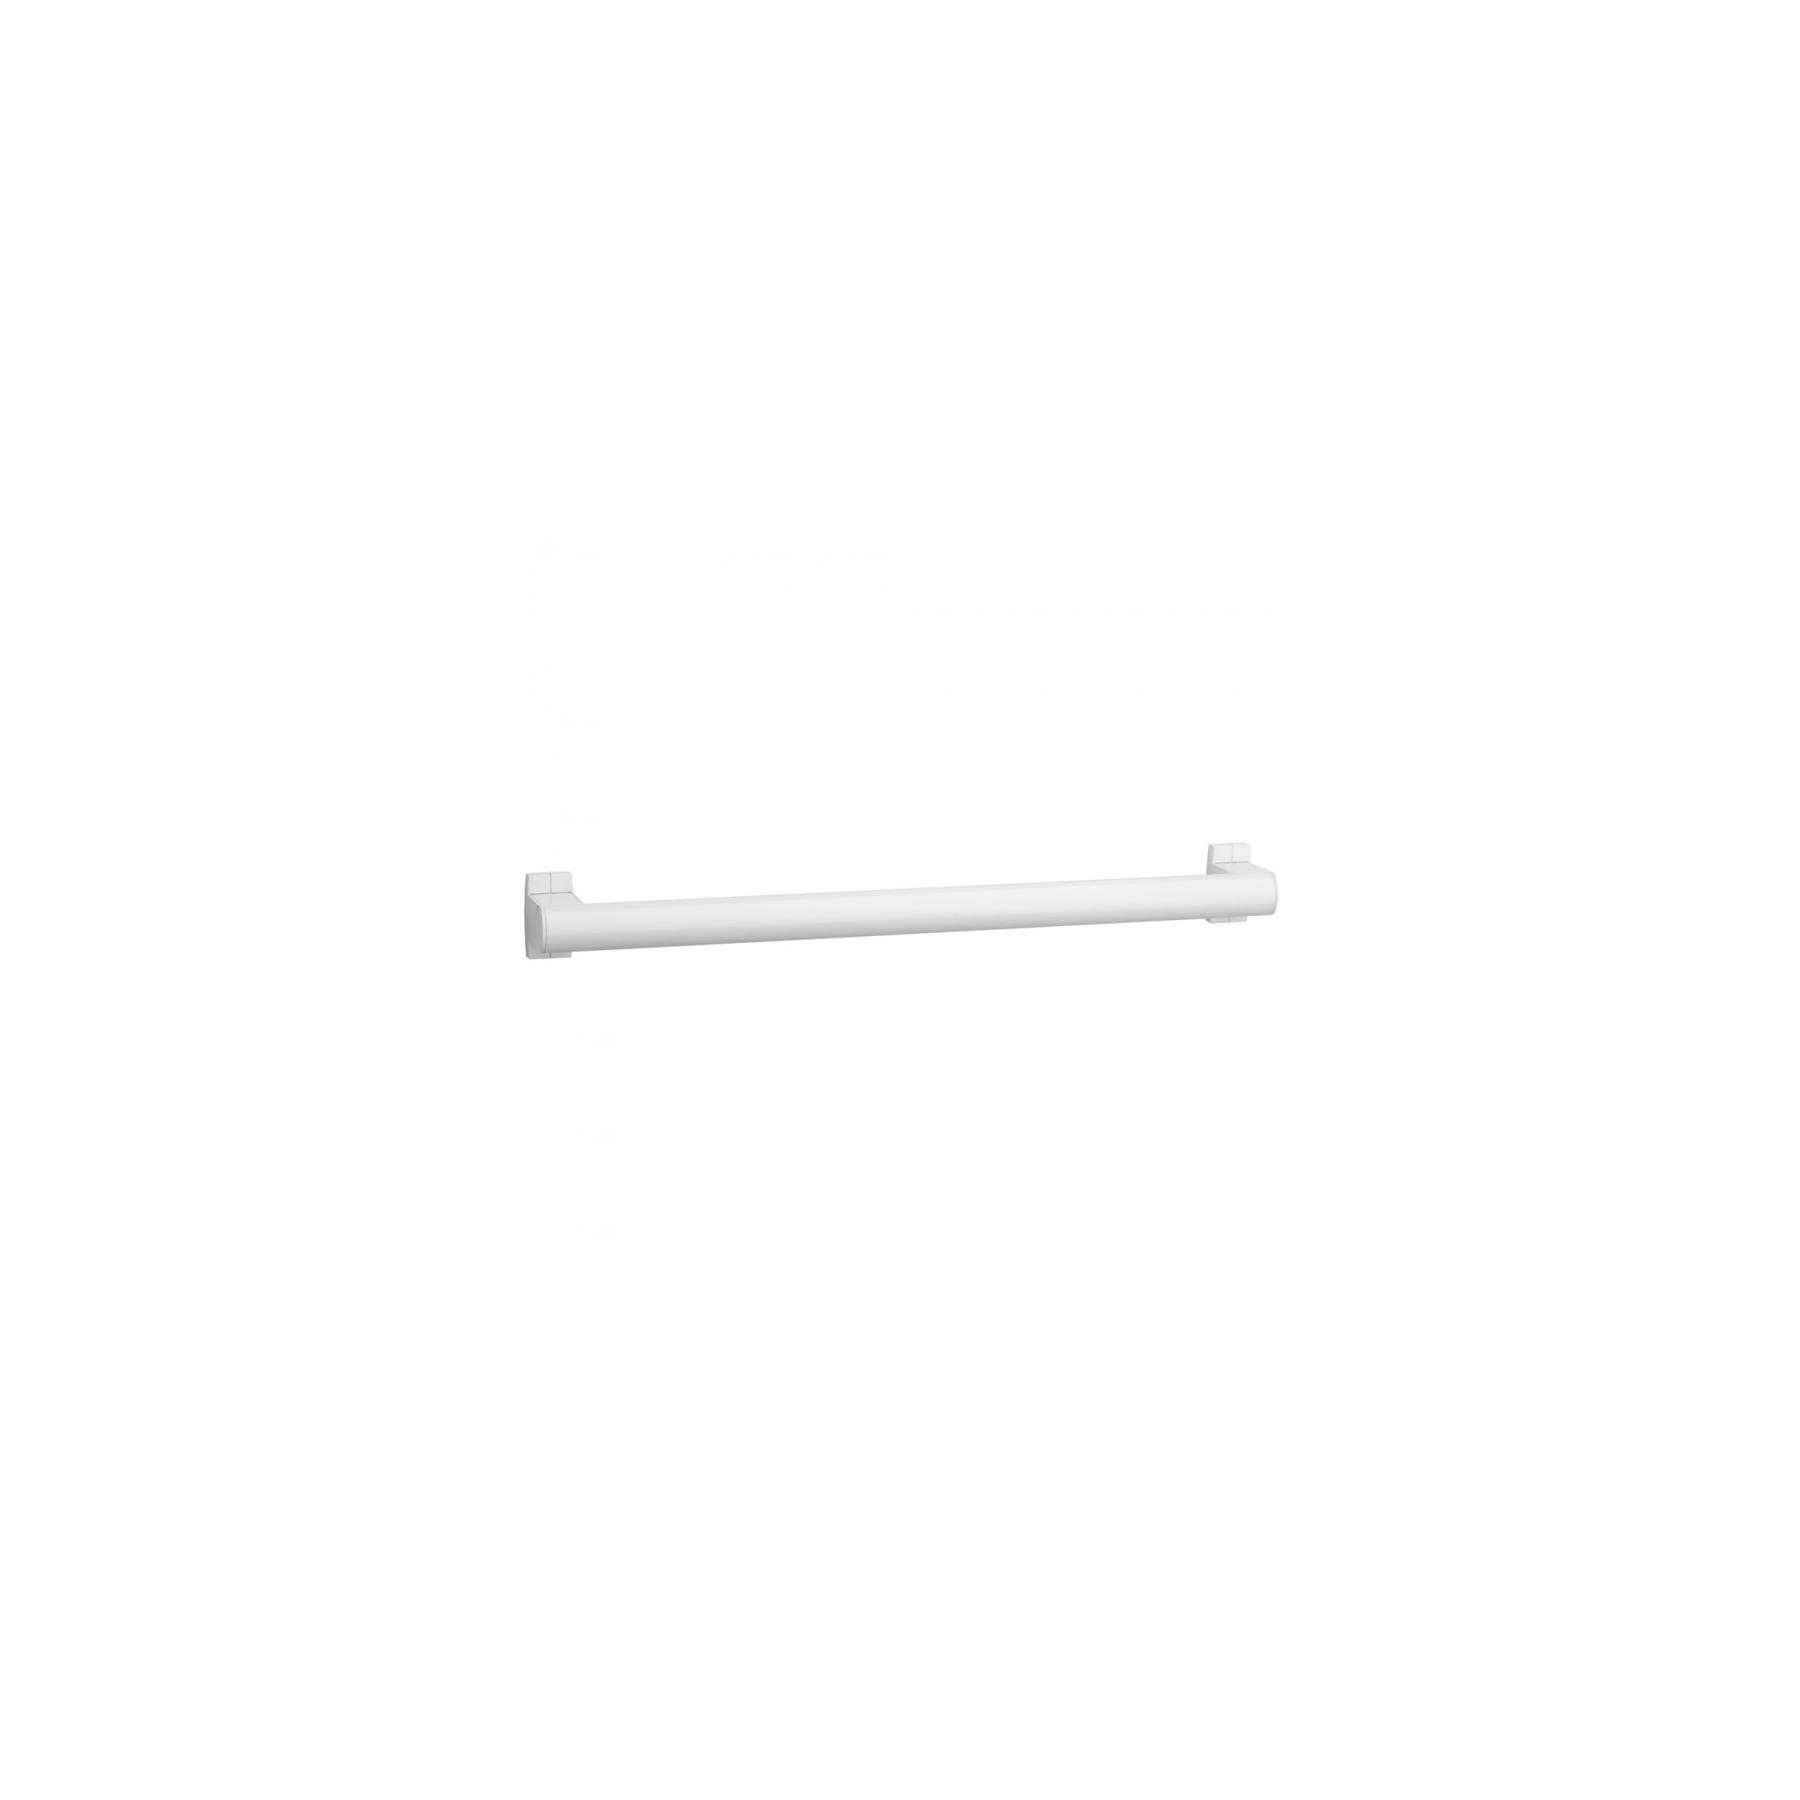 Barre PMR de relèvement droite normes handicapé Gamme PRO PELLET longueur 40cm tube aluminium blanc Ø 38 x 25 mm cache-fixations blanc